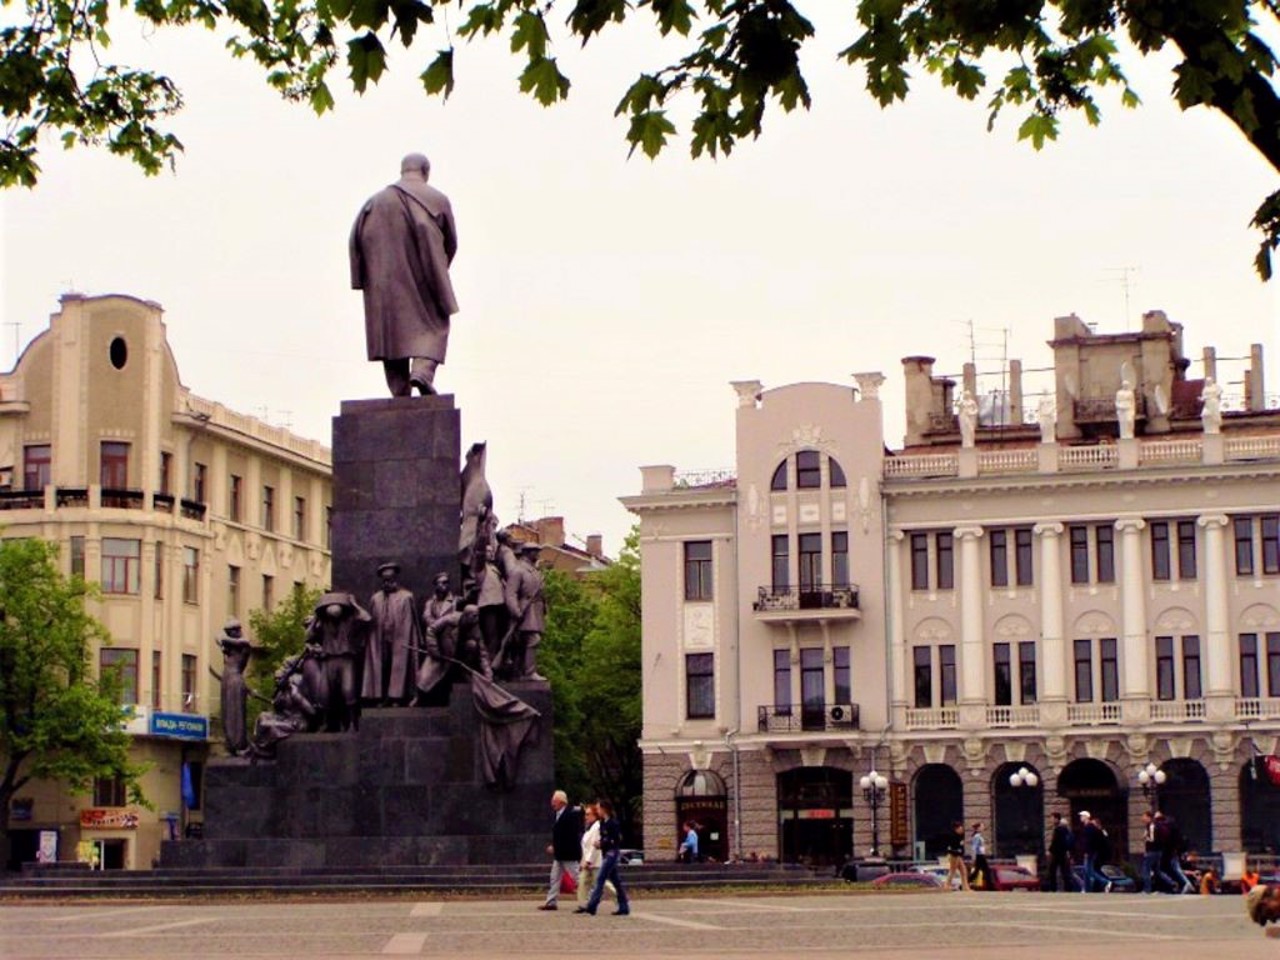 Taras Shevchenko Monument, Kharkiv